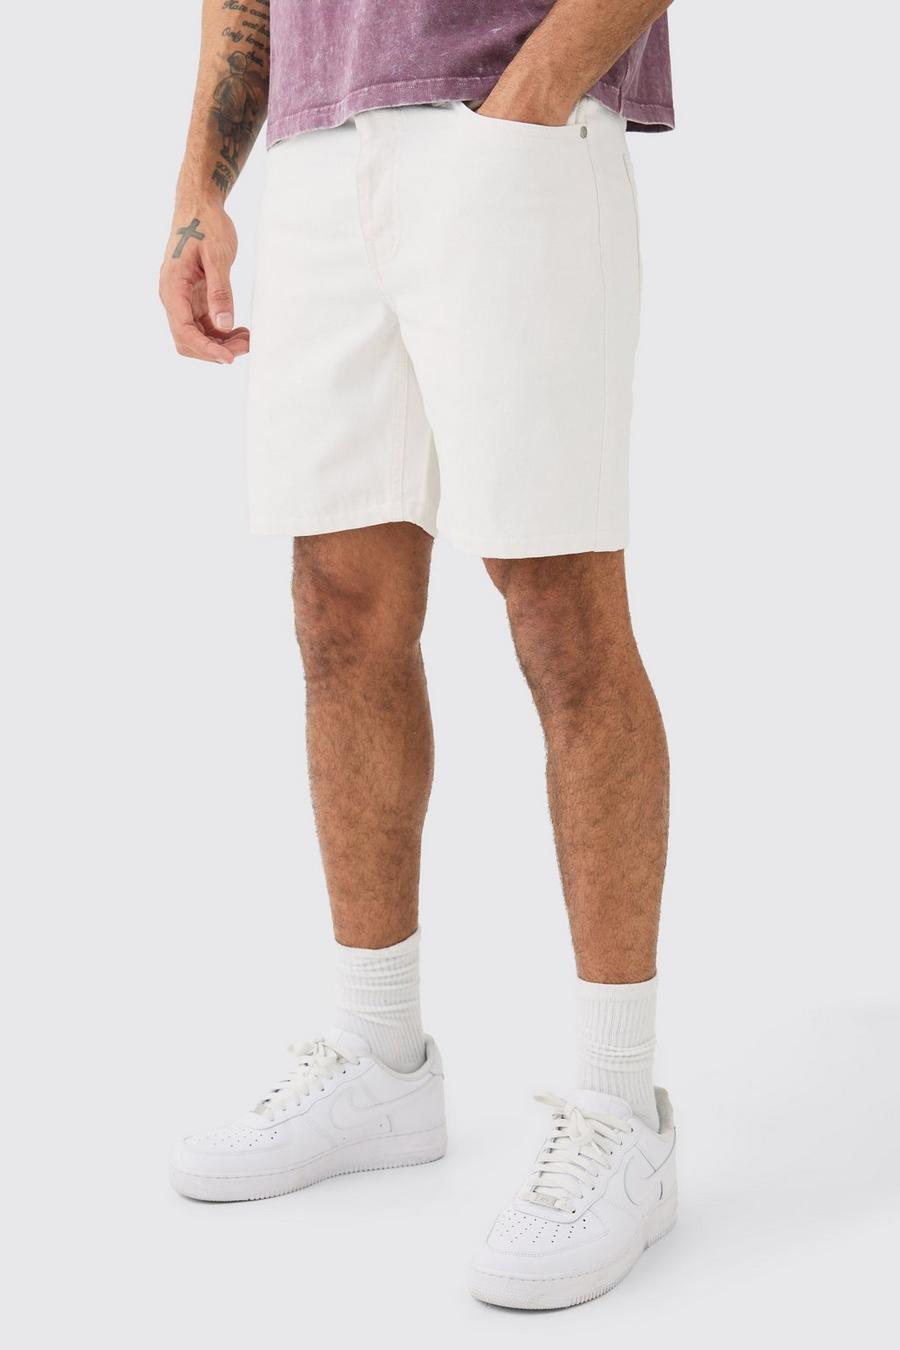 Pantalones cortos vaqueros ajustados sin tratar en blanco, White image number 1